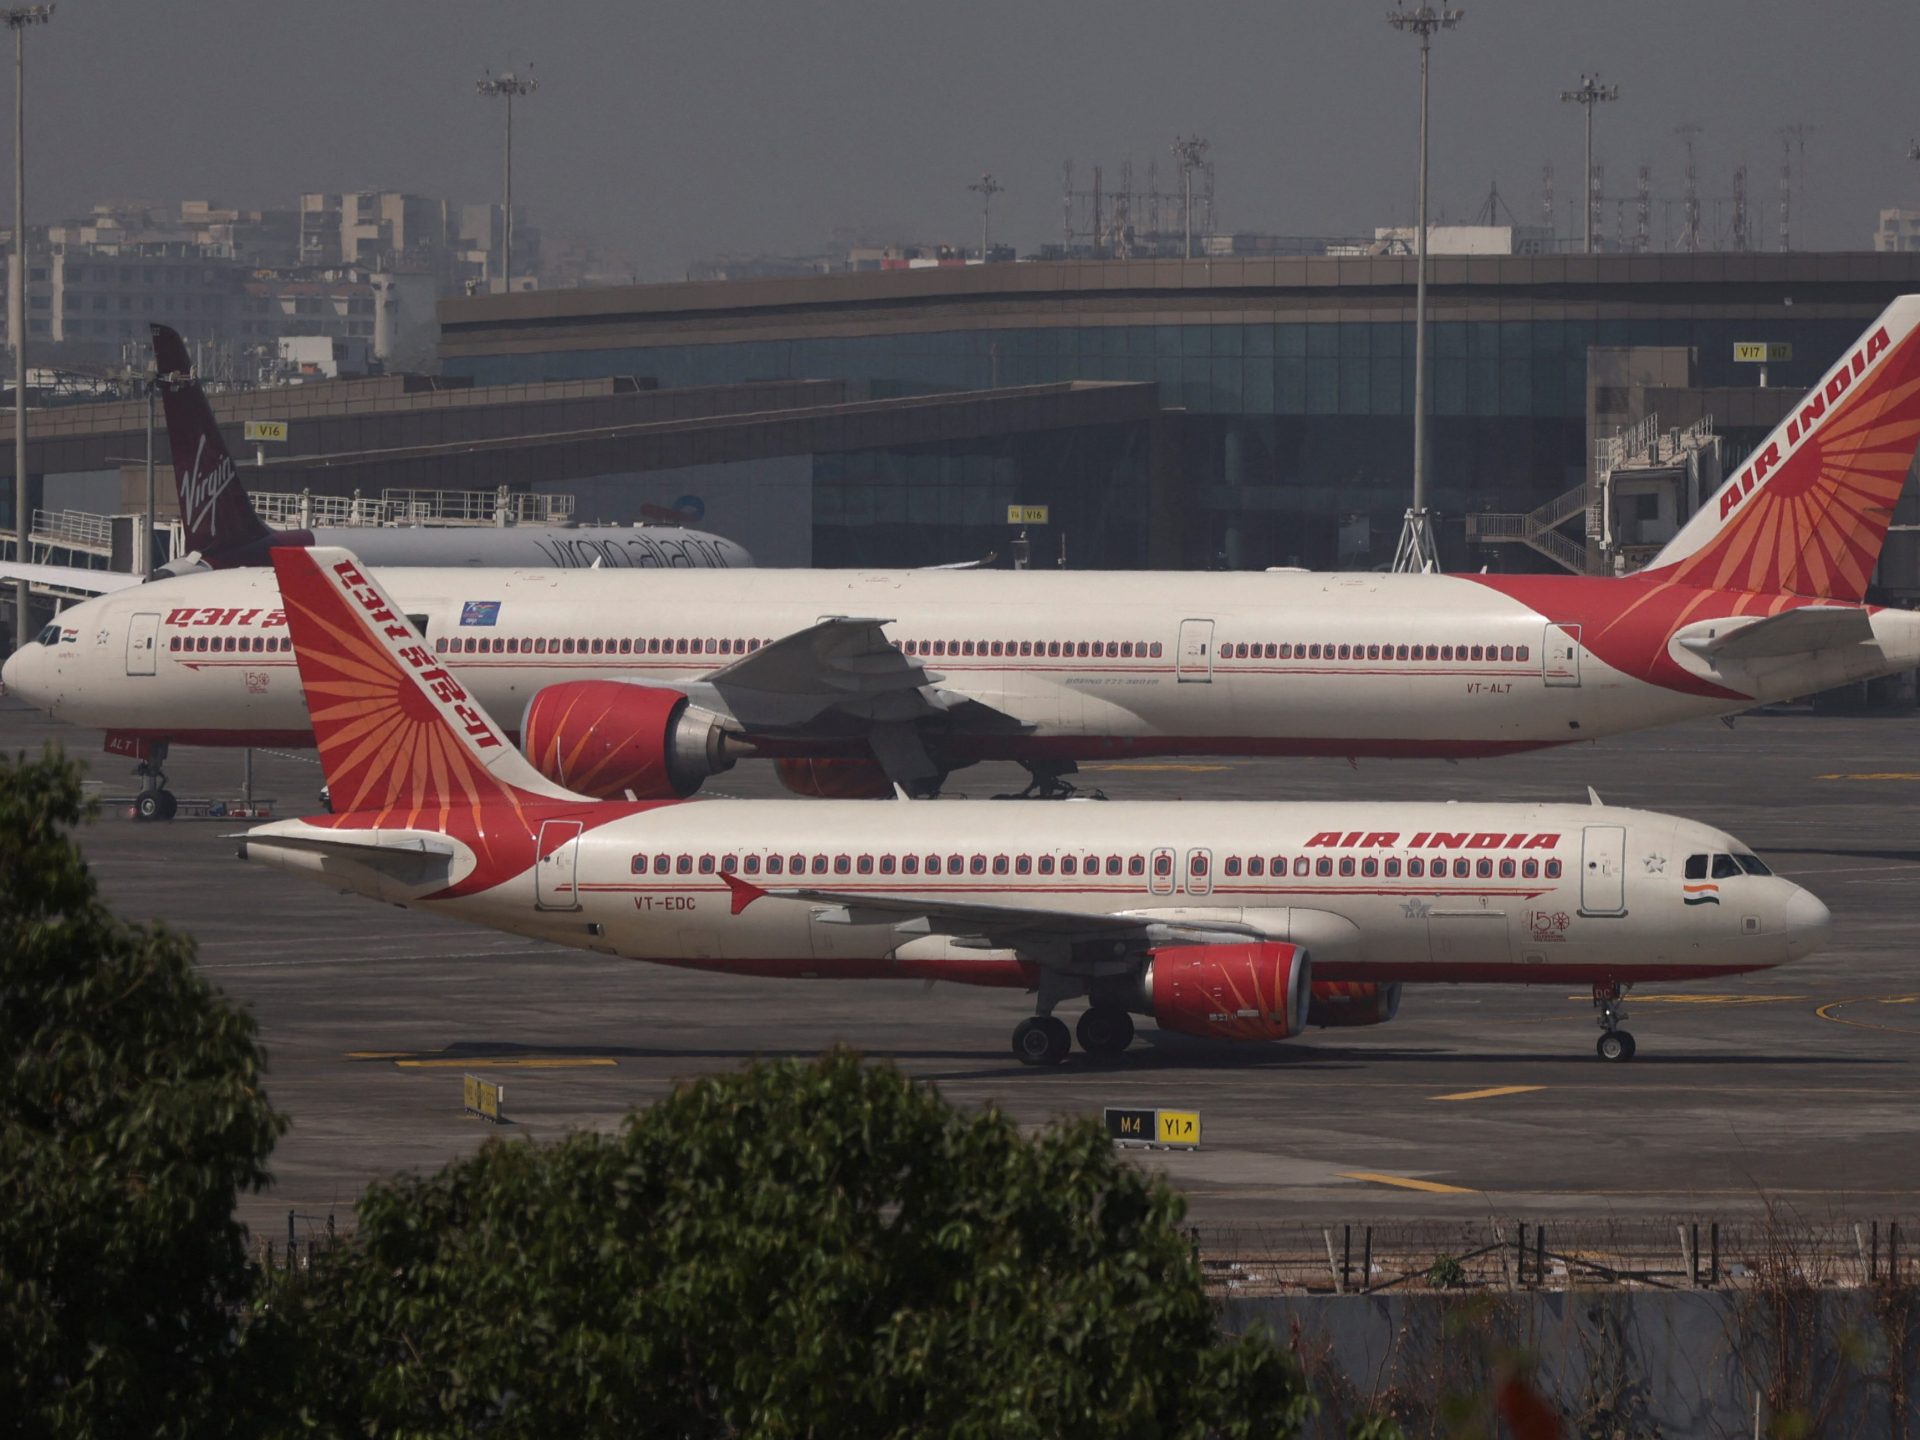 Air India mengirimkan pesawat untuk penumpang AS yang terdampar di Rusia |  Berita Penerbangan